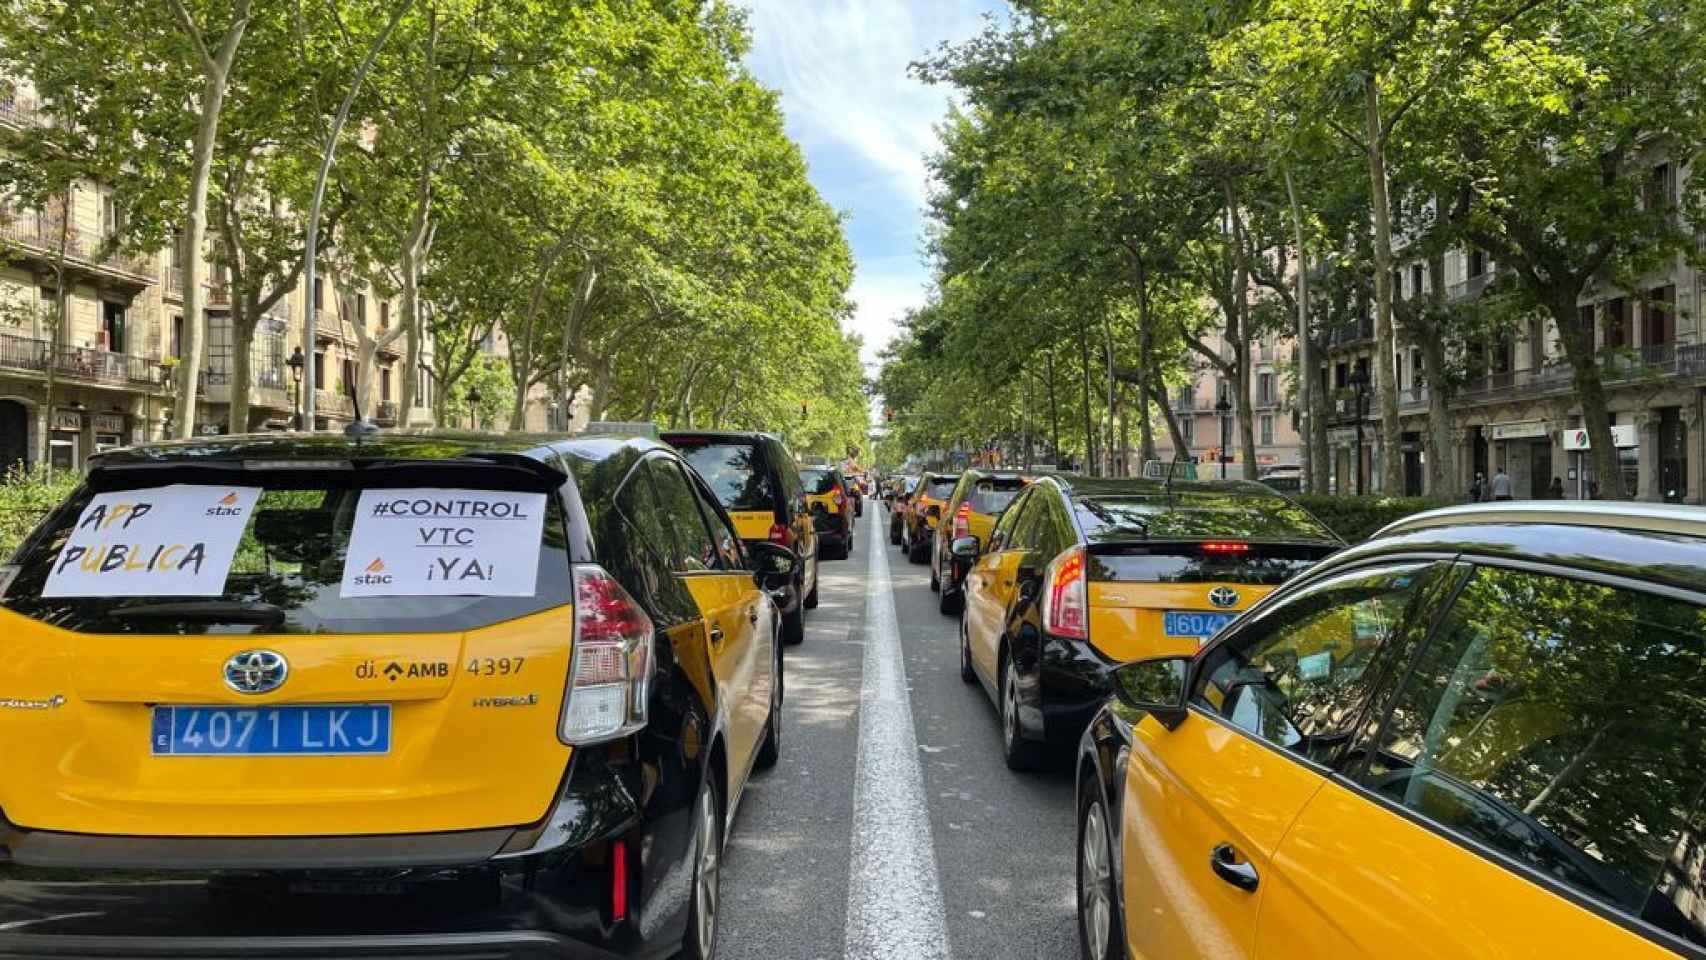 Cientos de taxis avanzan por la Gran Via en una marcha lenta / DAVID GORMAN